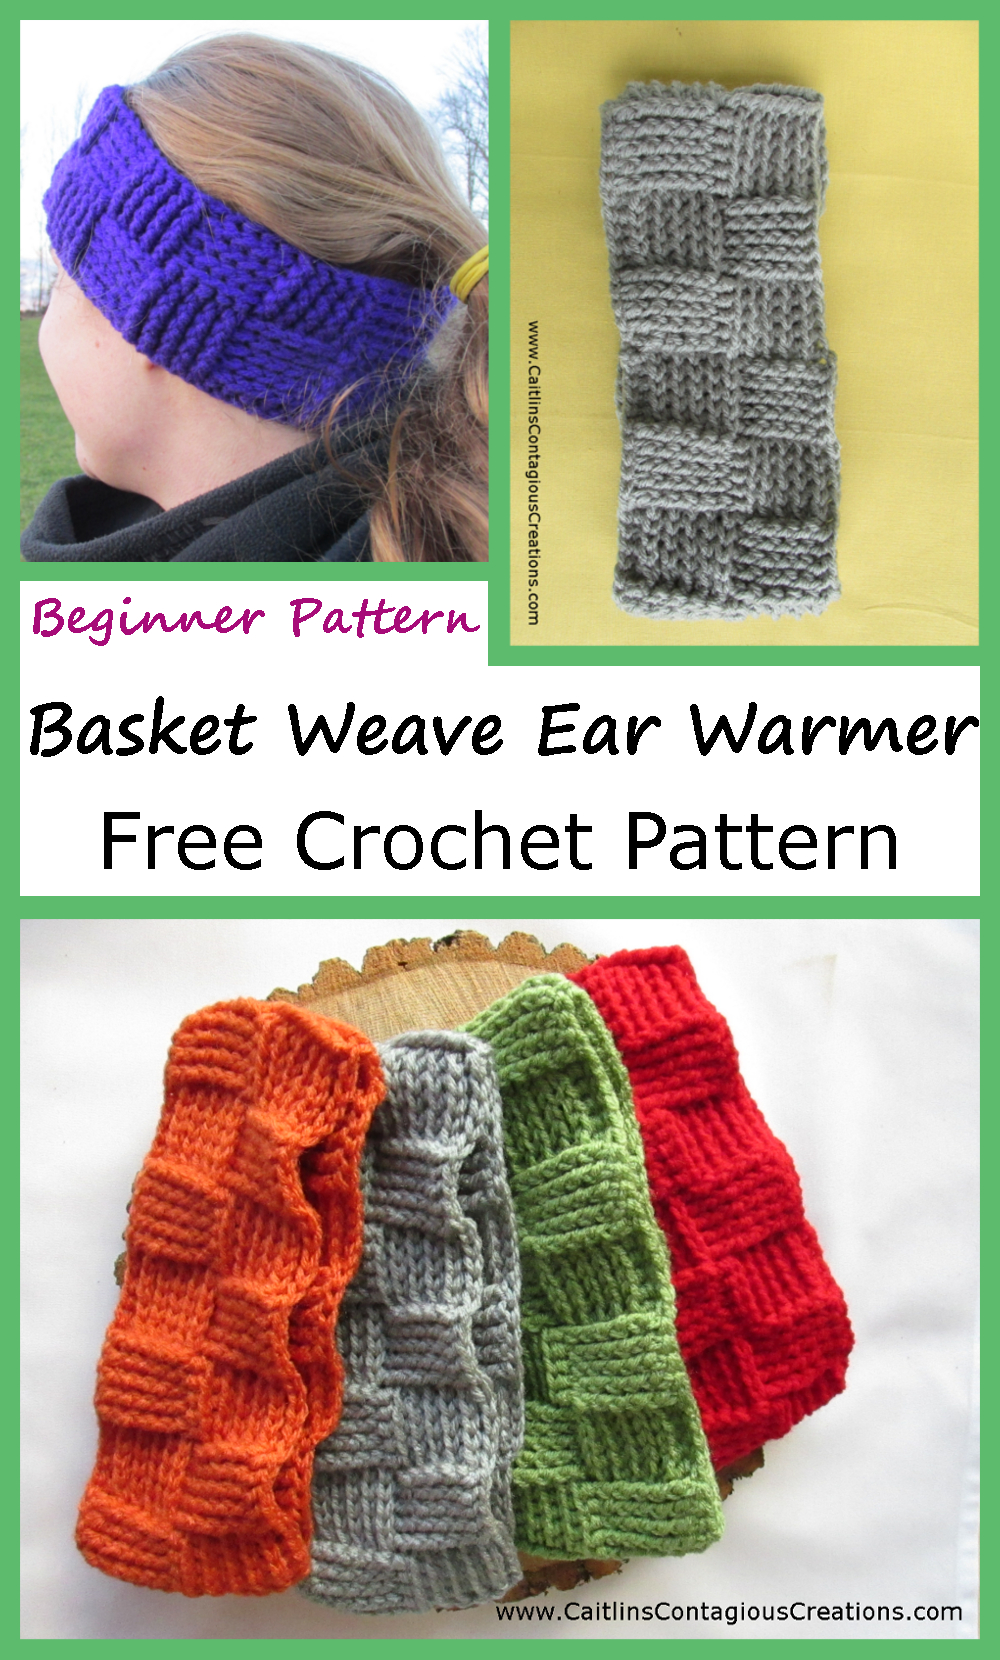 Easy Basket Weave Crochet Pattern Basket Weave Ear Warmer Crochet Pattern Caitlins Contagious Creations